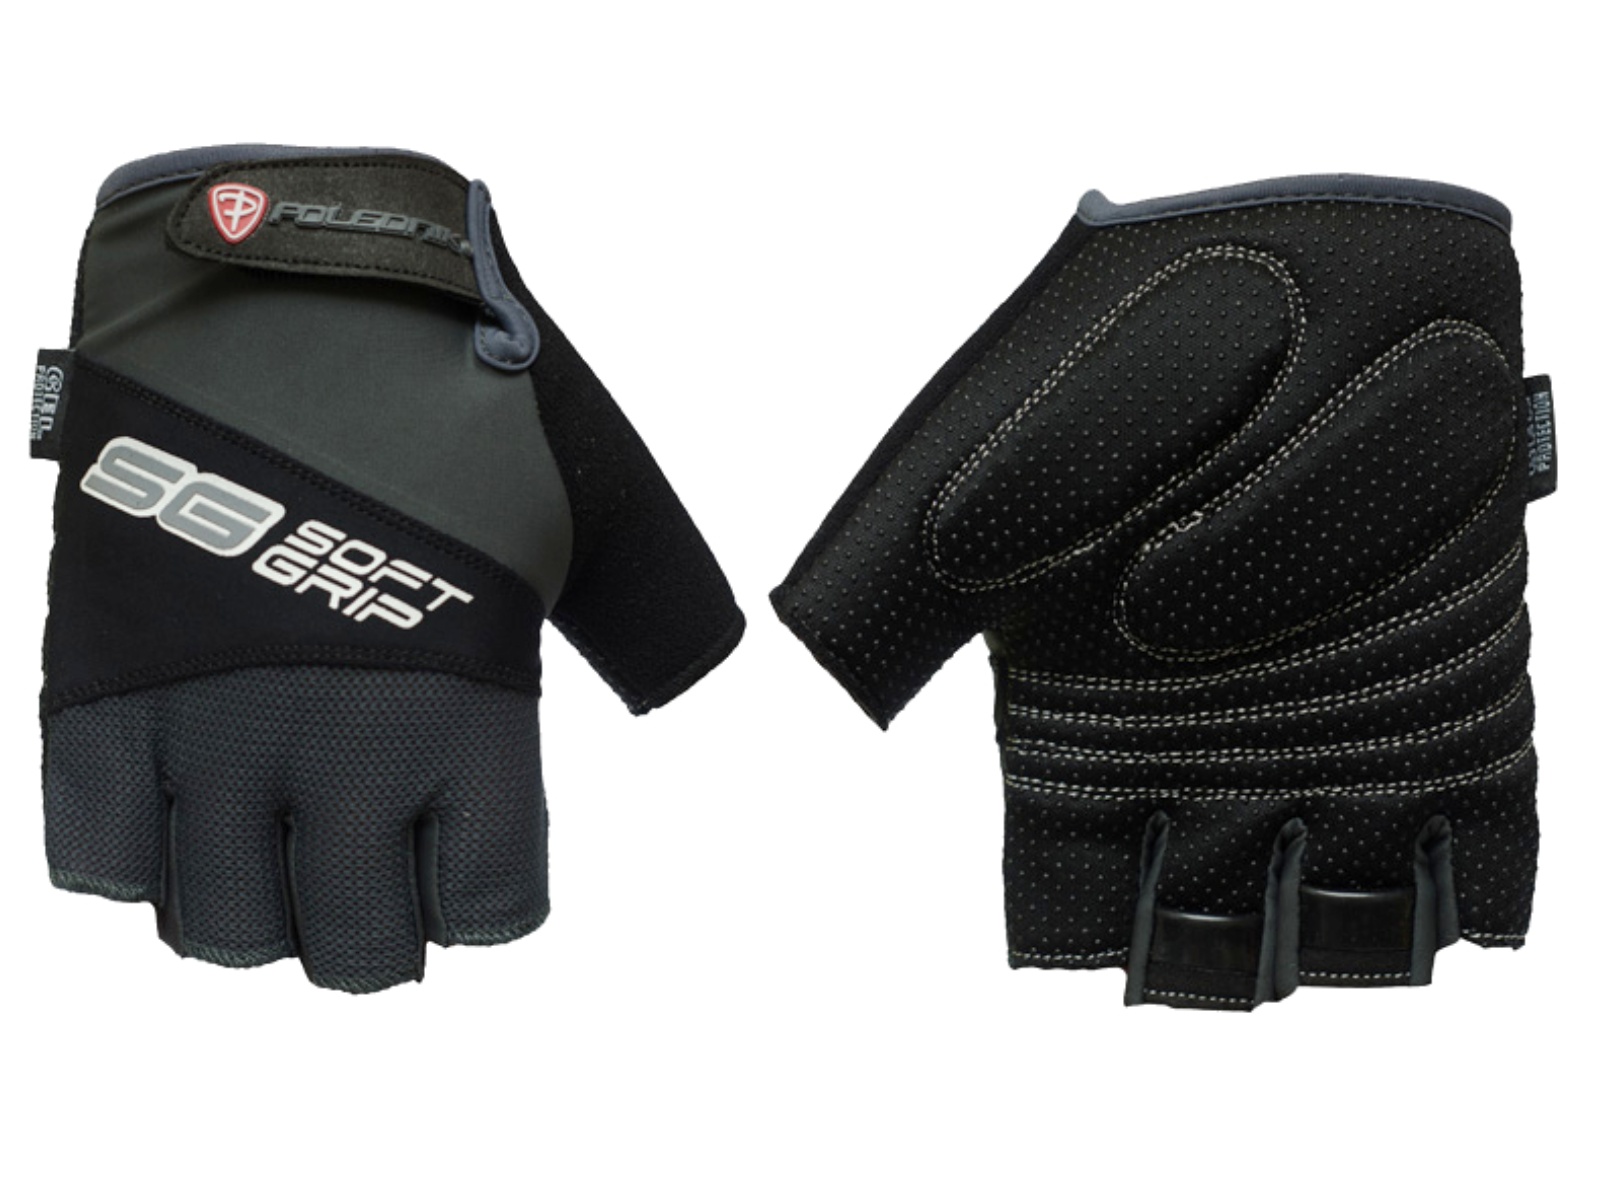 Cyklo rukavice POLEDNIK Soft Grip pánské velikost XL - černé